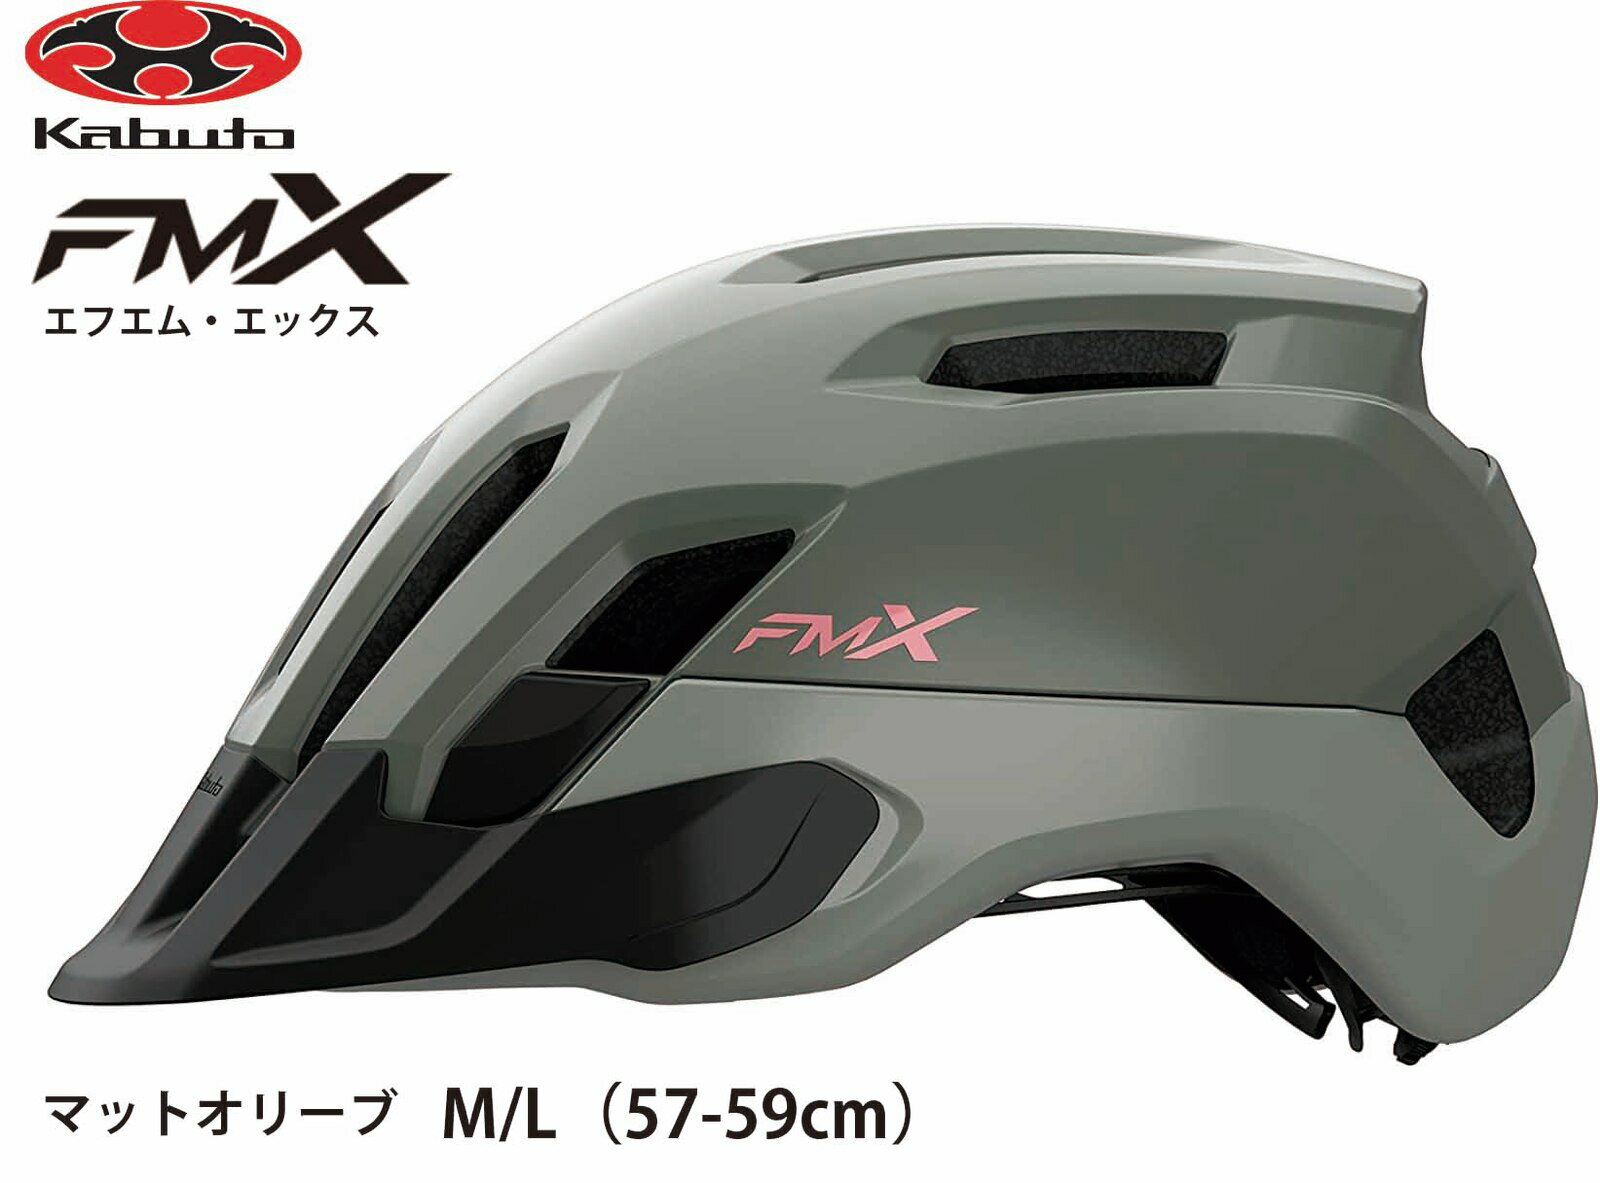 OGK KABUTO オージーケー カブト FM-X エフエム エックス フロント可変式バイザー付 インナーパッド装備 大人用サイクルヘルメット 自転車用ヘルメット M / L サイズ 57~59cm マットオリーブ